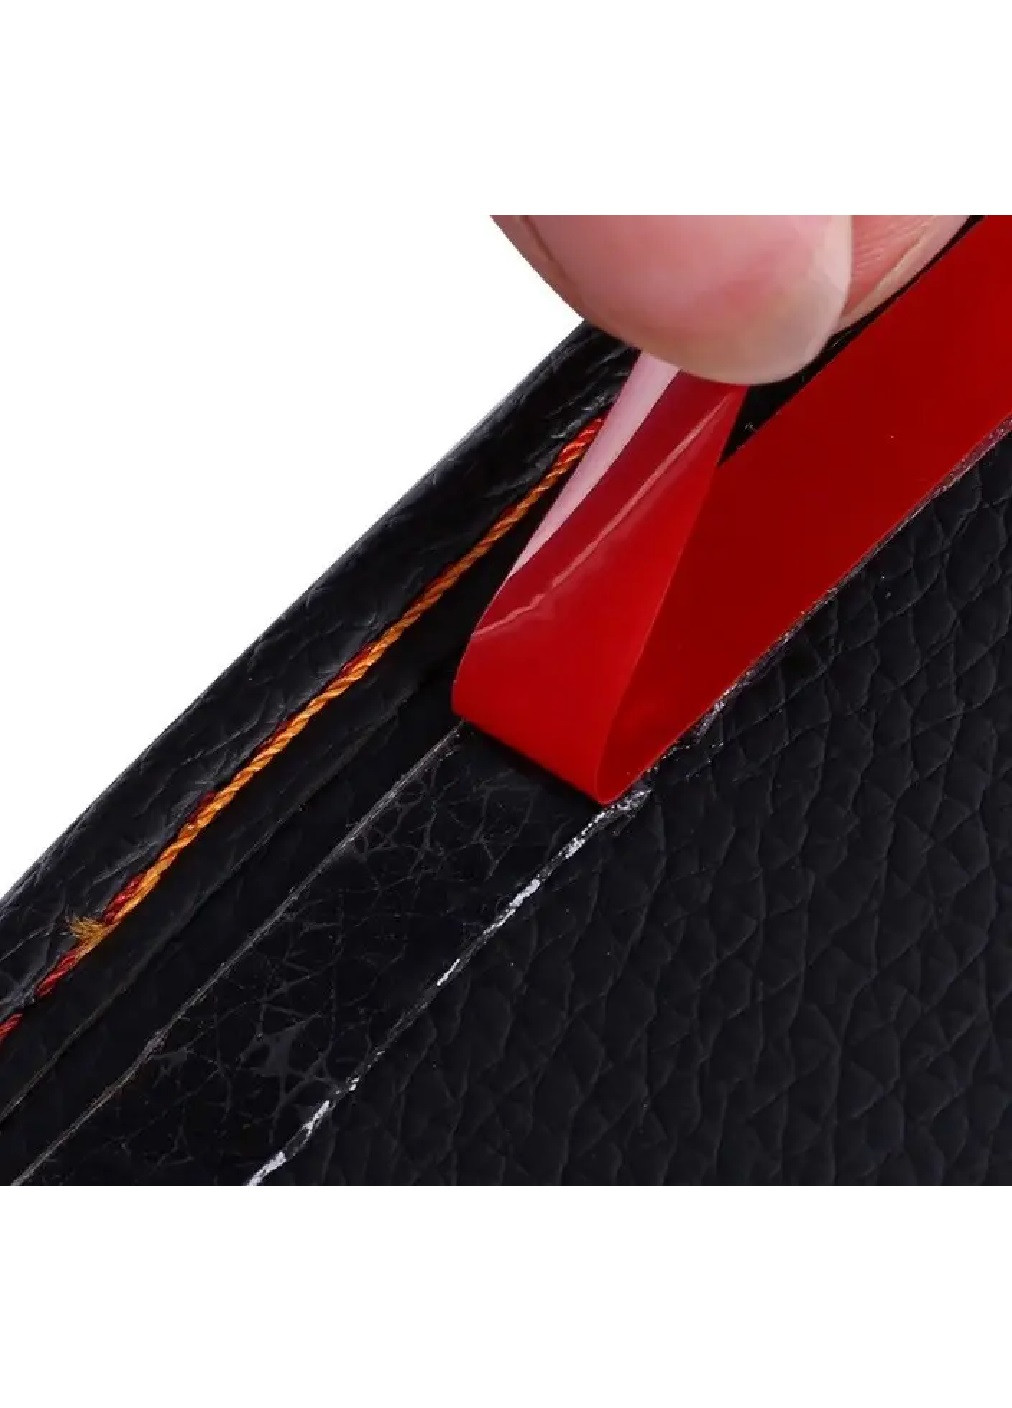 Органайзер карман кармашек автомобильный в машину для карточек аксессуаров личных вещей 17.5х12.5 см (474995-Prob) Бежевый Unbranded (260617575)